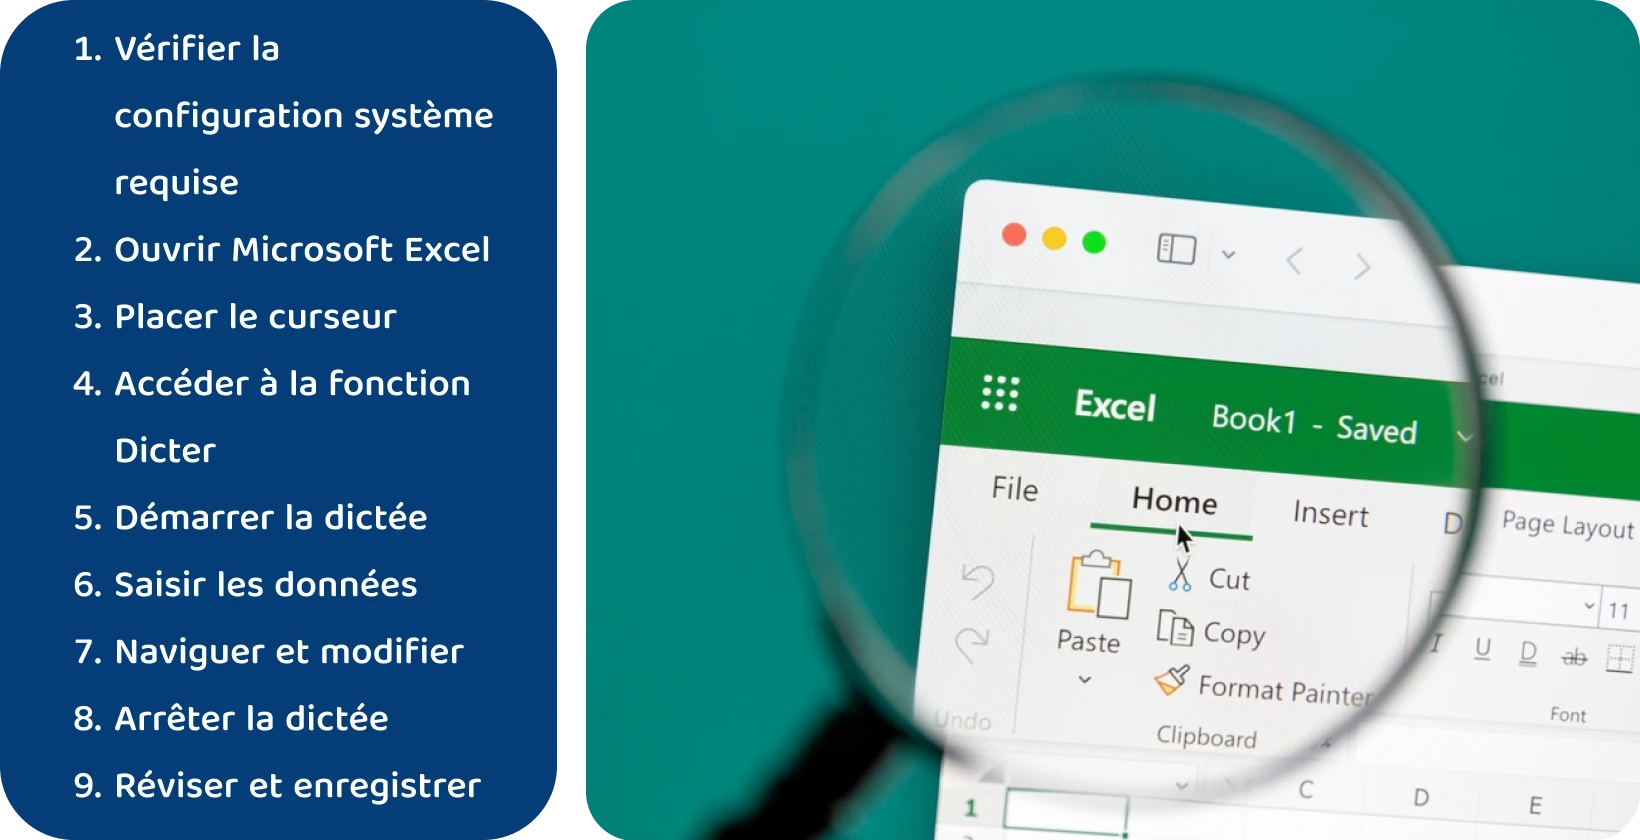 Utilisez la fonction de dictée dans Excel pour transcrire efficacement la parole en texte, comme indiqué via l’interface agrandie.